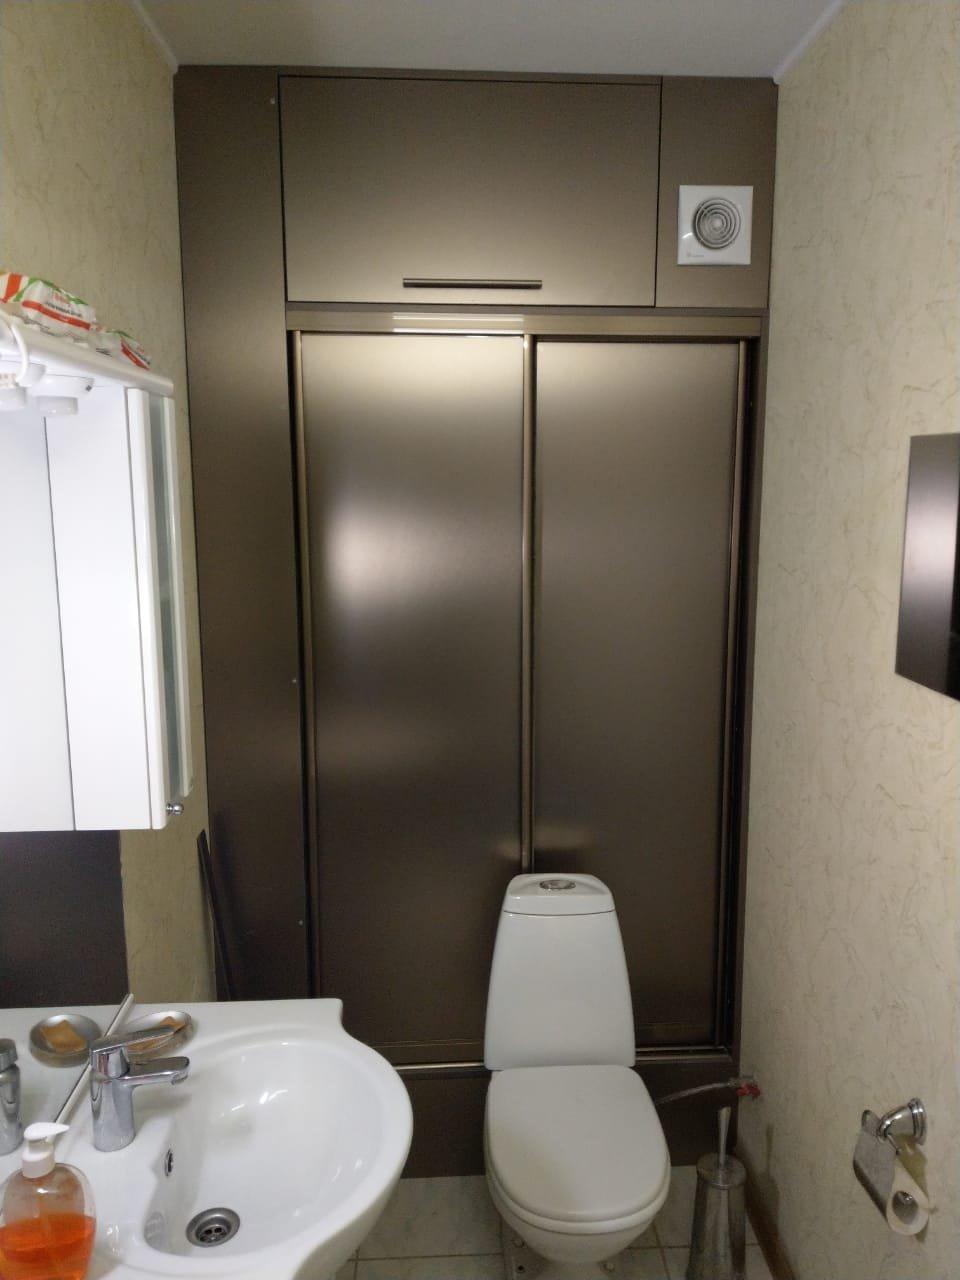 Шкаф в туалет на заказ - купить по индивидуальным в Москве по цене производителя